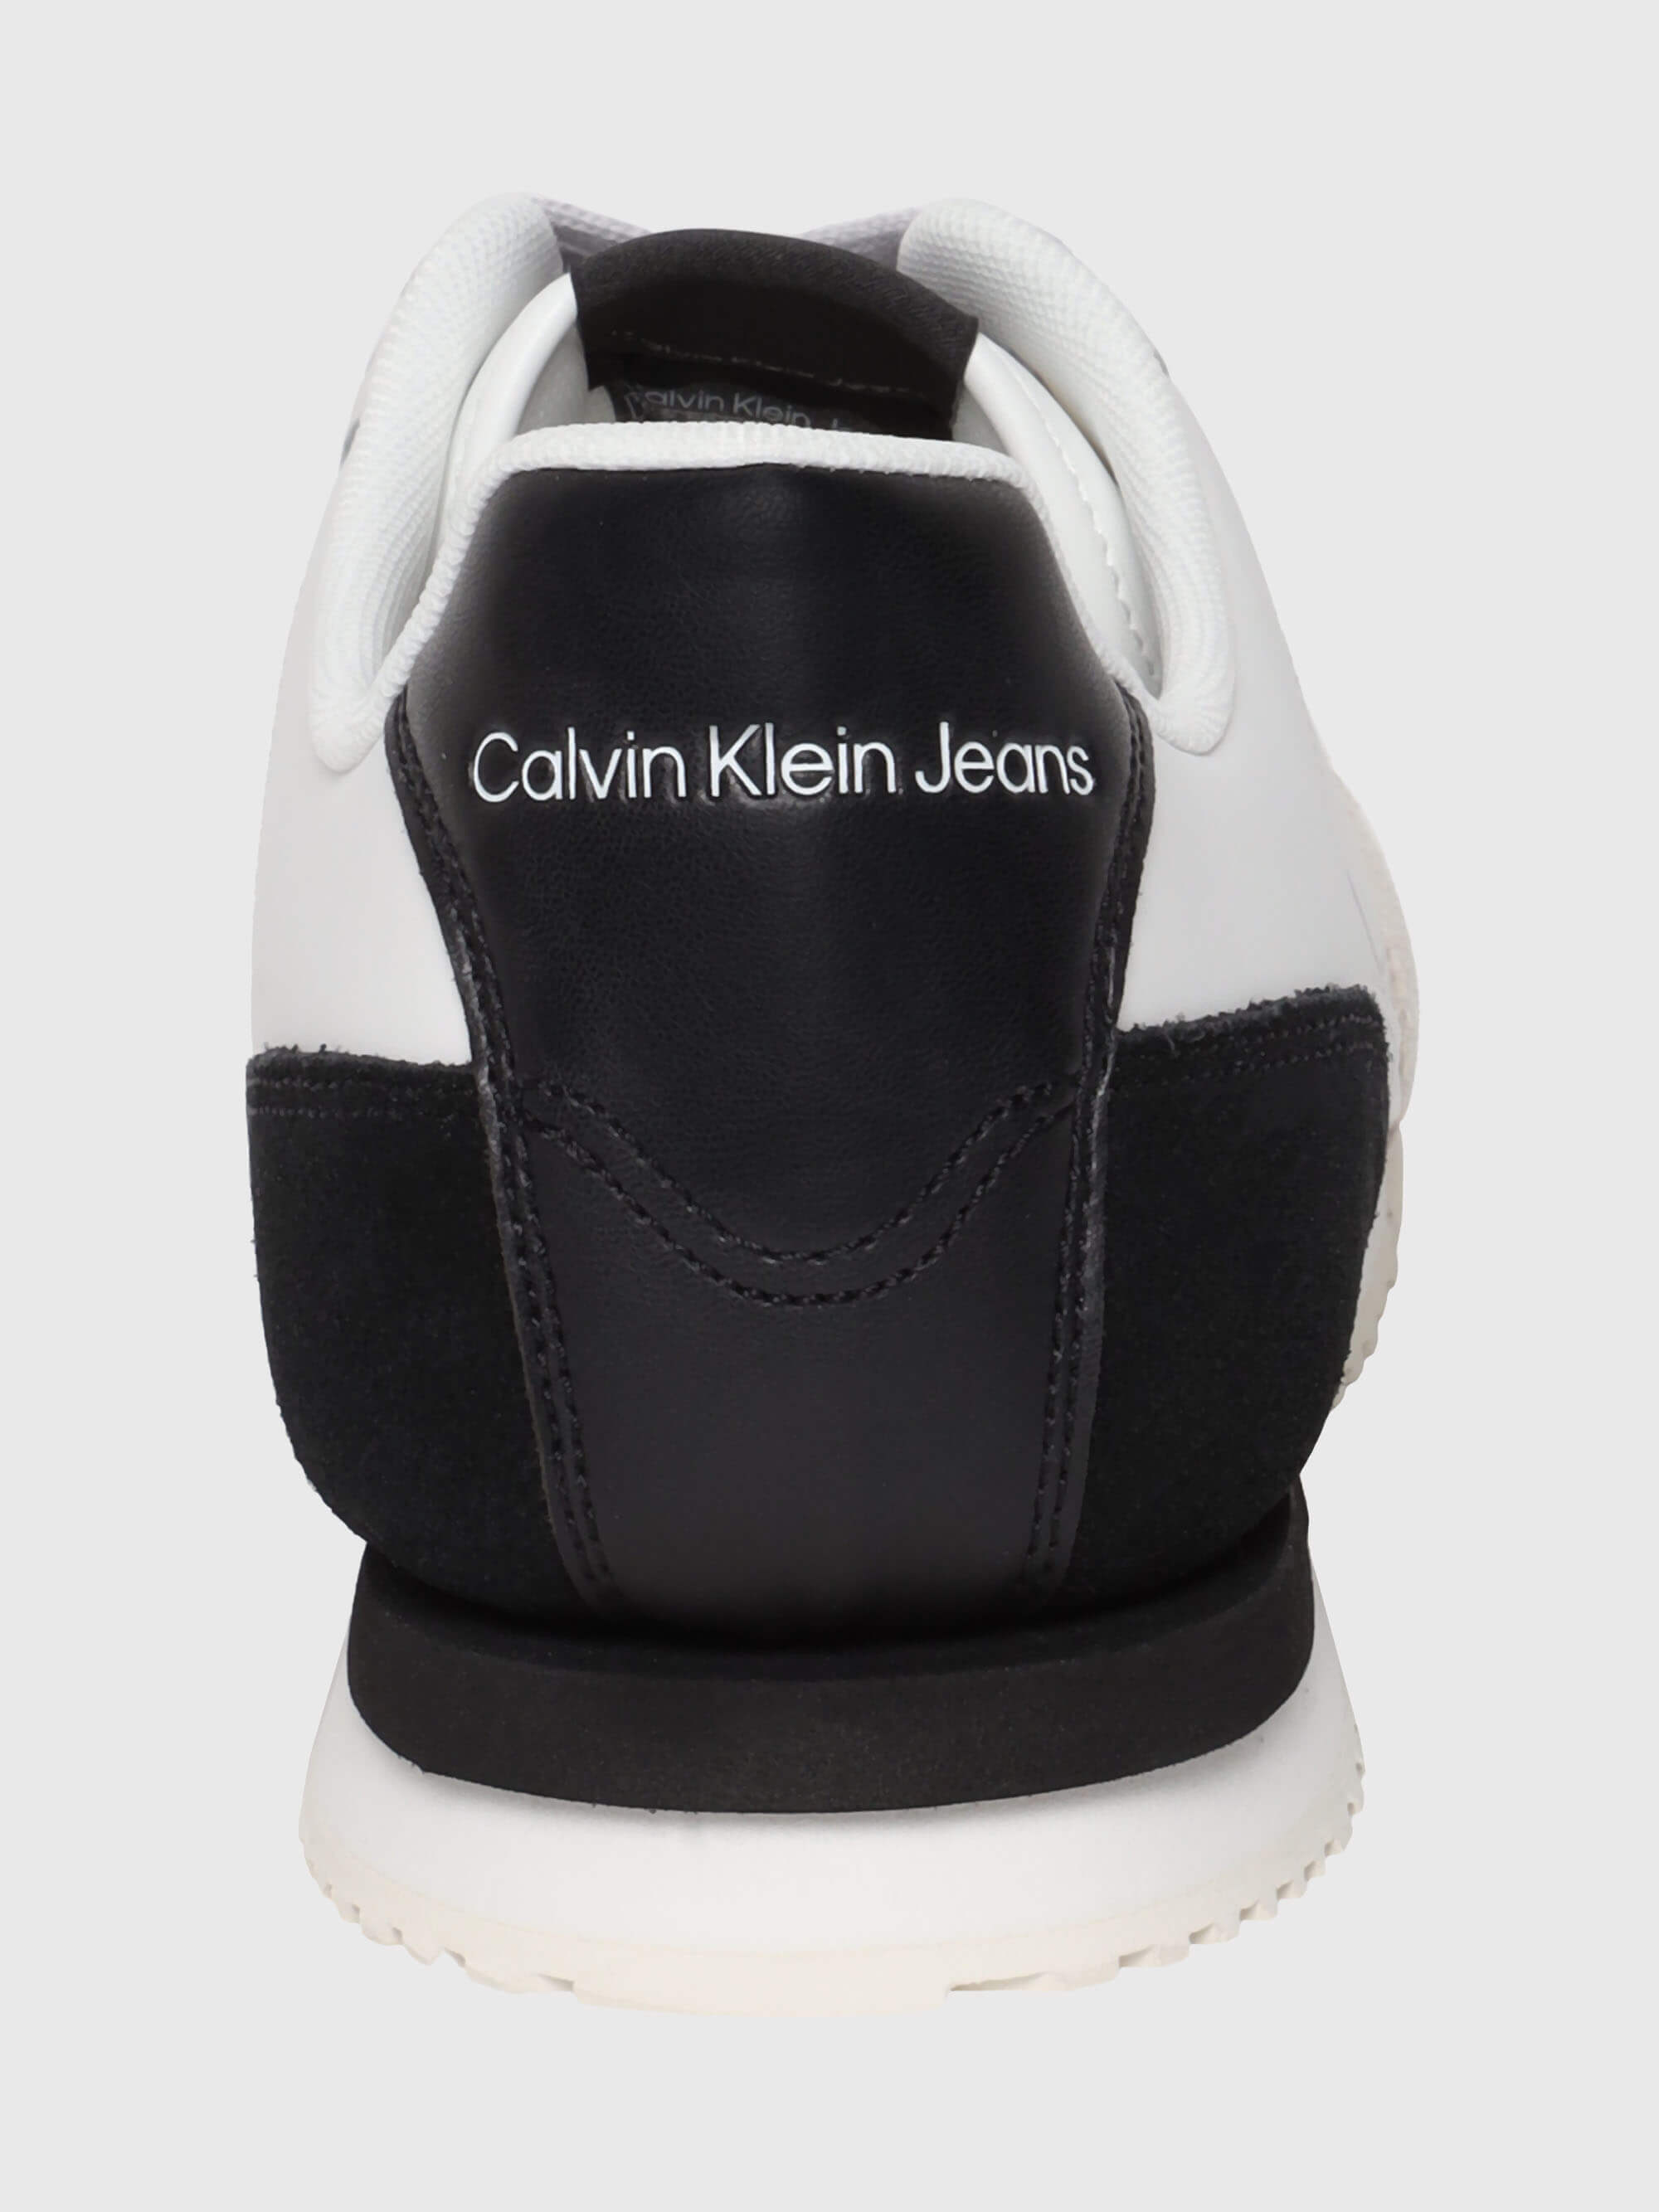 Tenis Calvin Klein Hombre Blanco